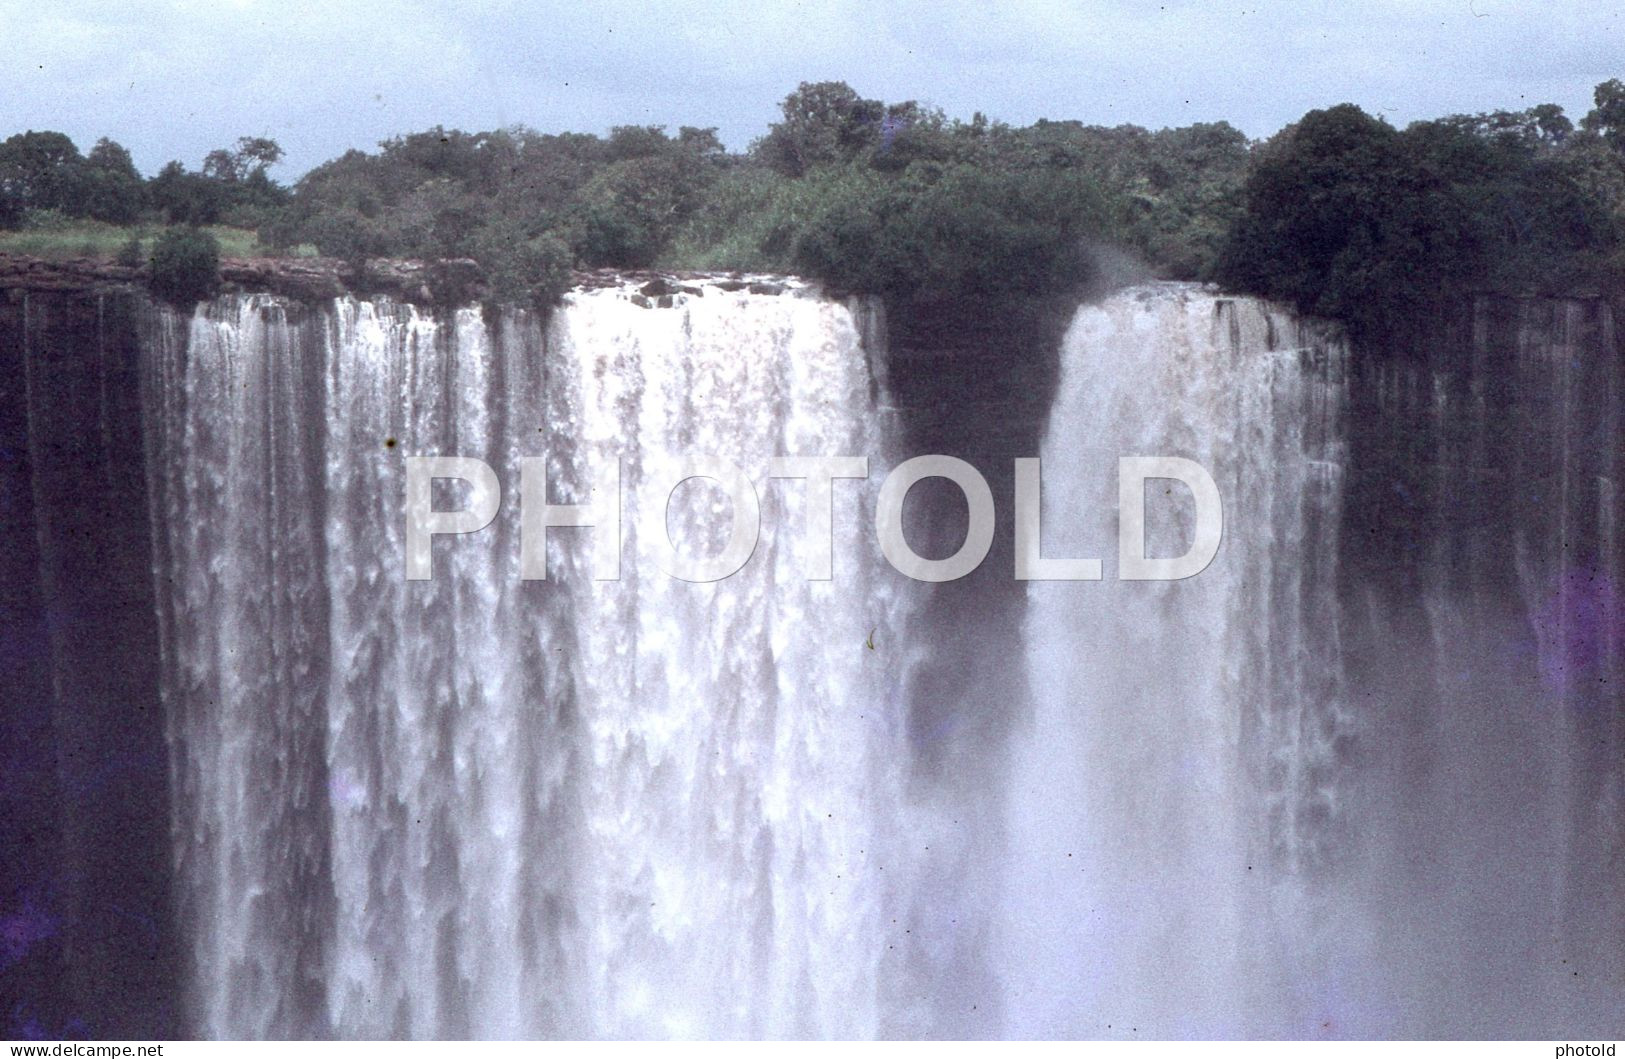 44 SLIDES SET 1968 ANGOLA AFRICA AFRIQUE ORIGINAL AMATEUR 35mm DIAPOSITIVE SLIDE Not PHOTO No FOTO NB4060 - Diapositive